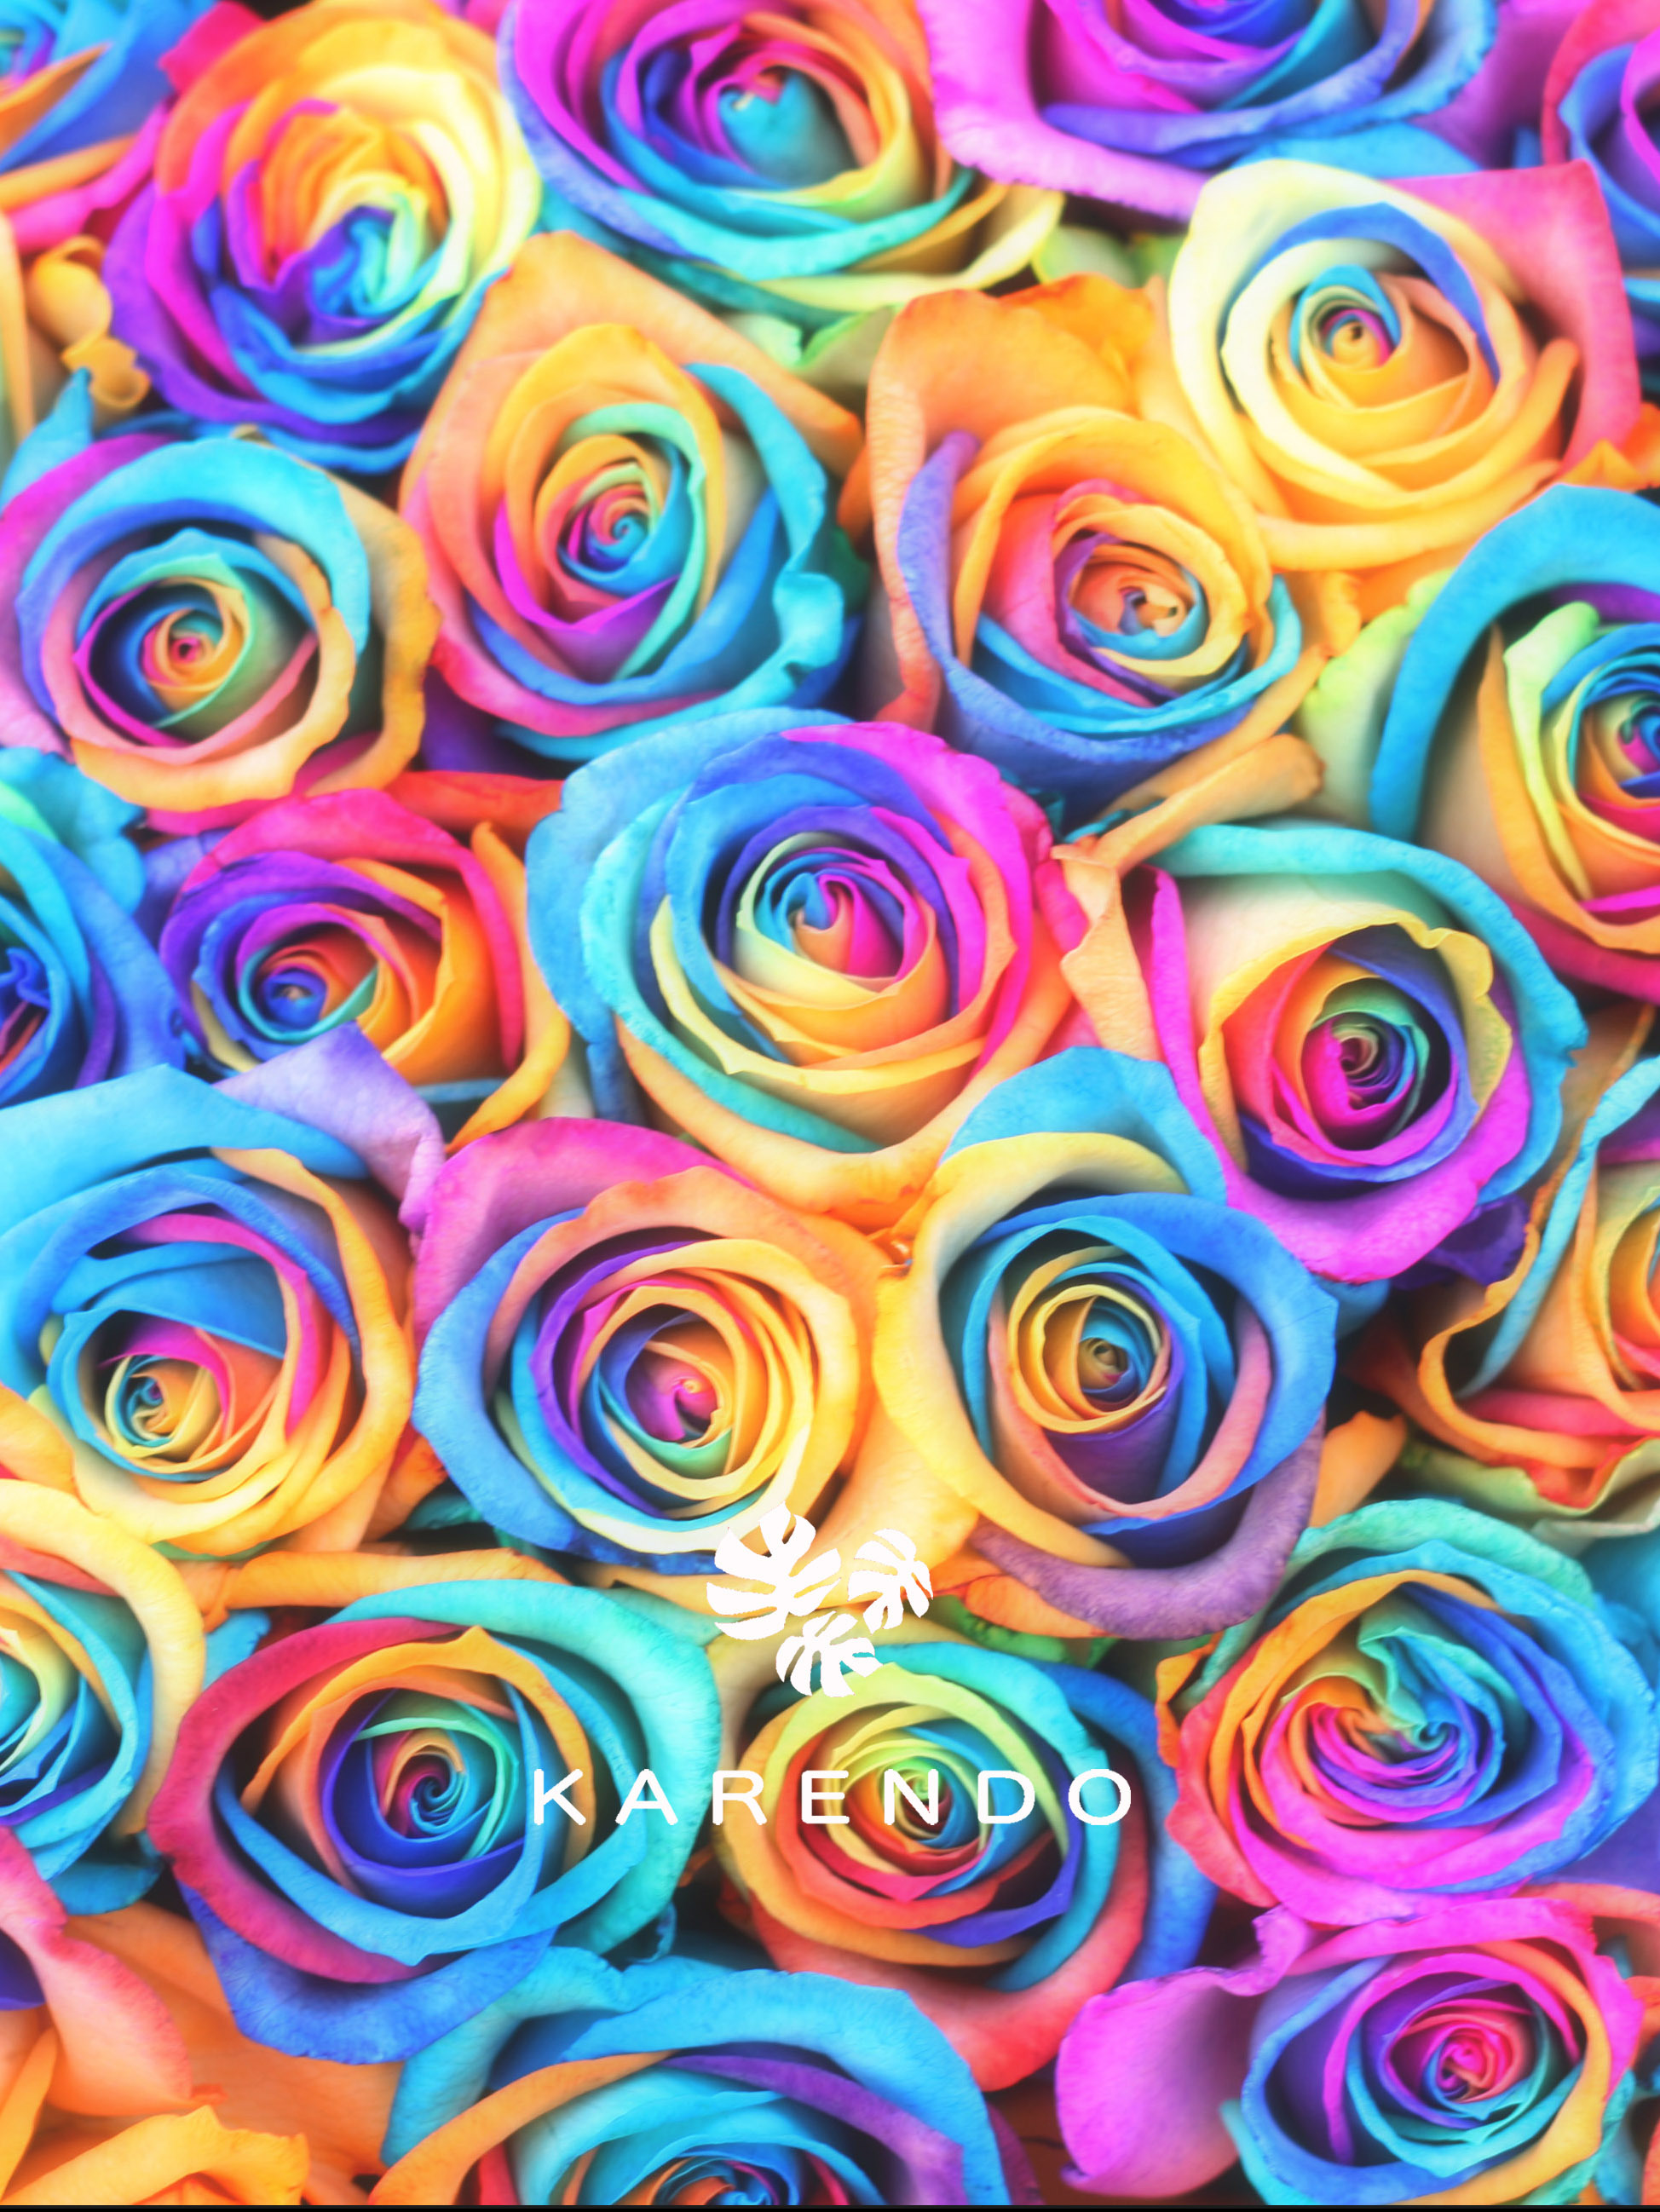 虹色のバラ など 上質かつ遊び心溢れるフラワーギフト Karendo が京都マルイに17年12月7日 木 新店オープン 株式会社花恋人のプレスリリース